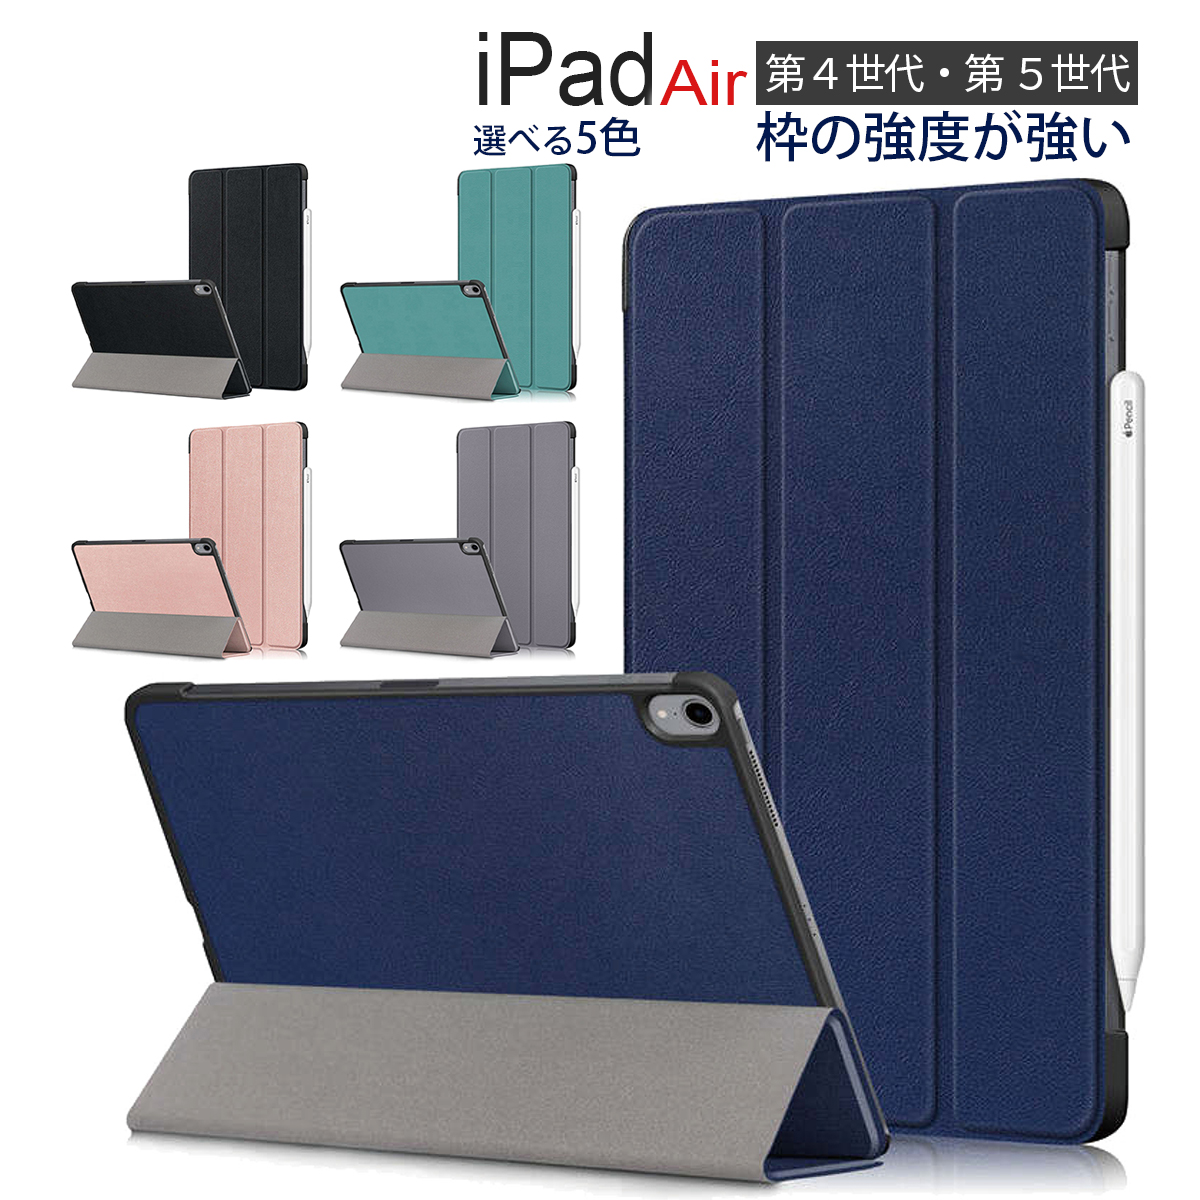 iPadAir 第5世代 第4世代 ケース グレー Air 5 4 10.9 ipadケース オートスリープ機能 スタンド A2072 A2316  A2589 A2591